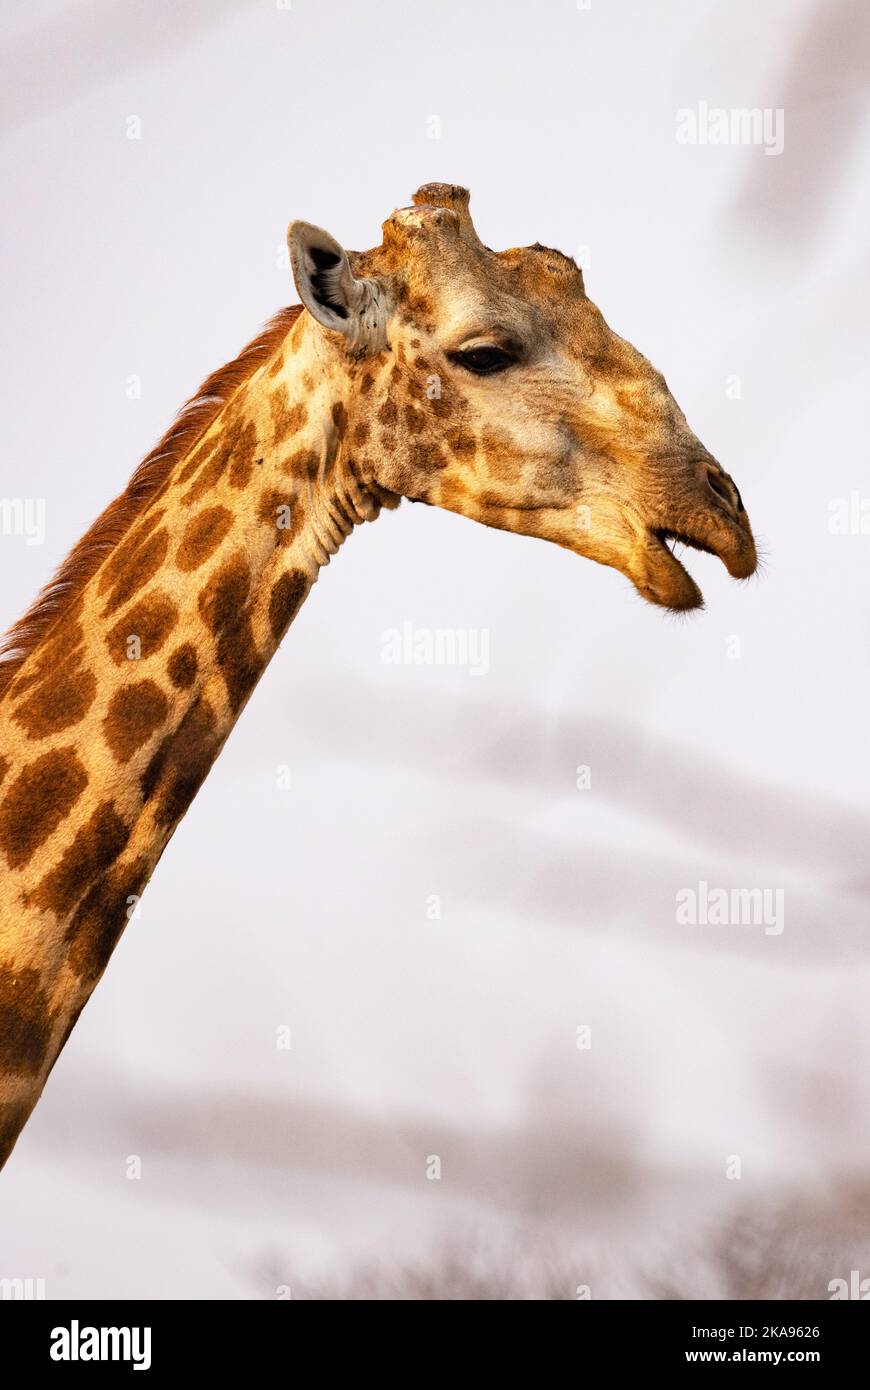 Girafe du Sud, giraffa giraffa, portrait de la tête et du cou, un animal adulte, réserve de gibier de Moremi, delta d'Okavango, Botswana Afrique. Faune africaine. Banque D'Images